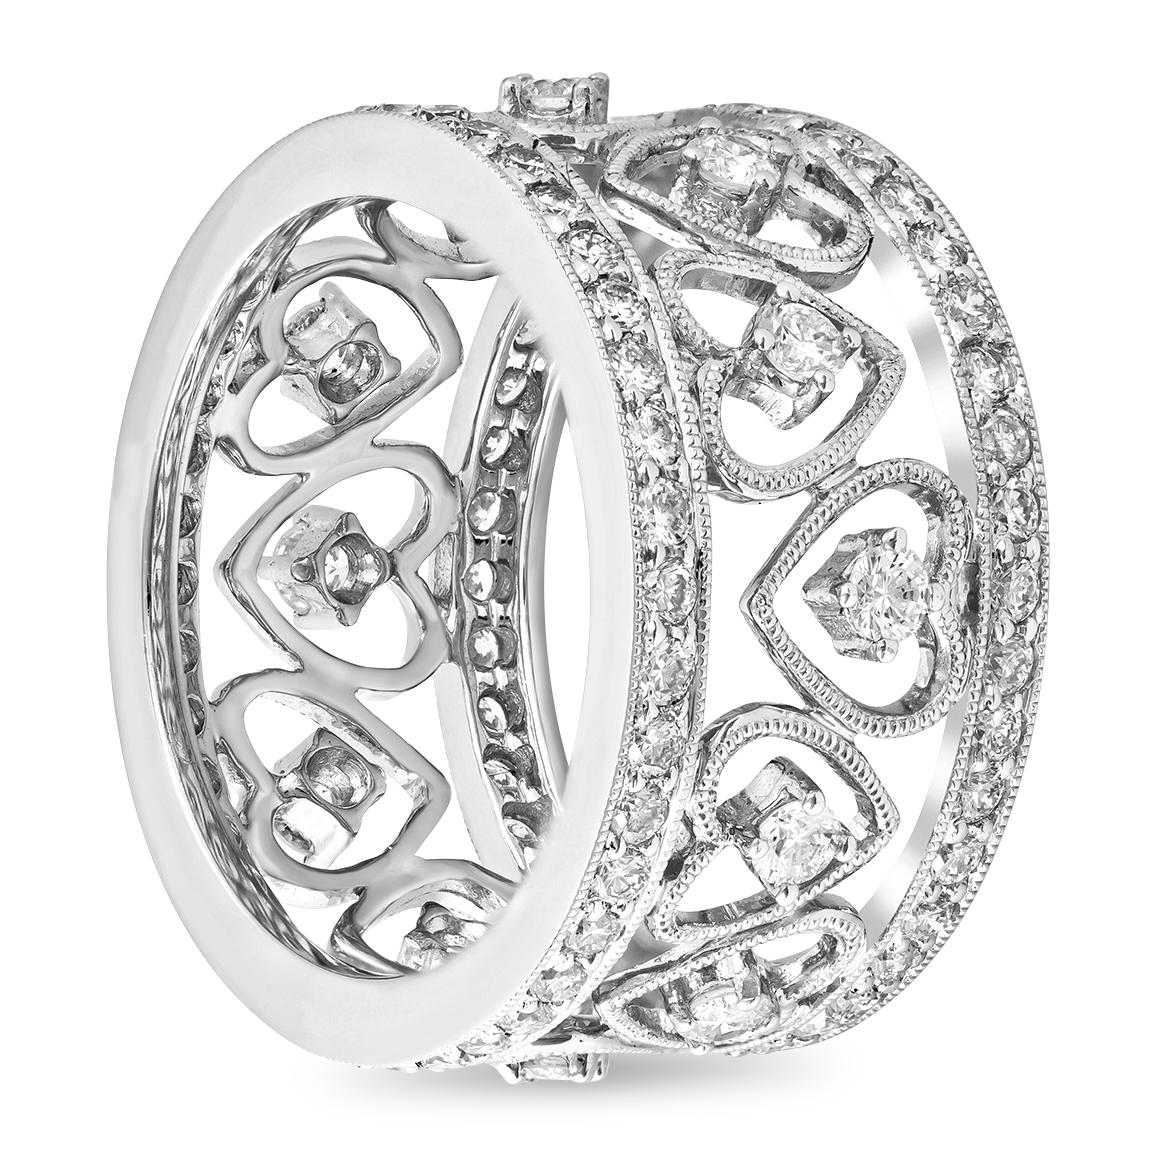 Ein aufwendig gestalteter Ehering im antiken Stil, besetzt mit insgesamt 1,61 Karat runden, funkelnden Diamanten. Der Ring ist mit offenen Herzen versehen, die elegant die 18-karätige Weißgoldkomposition umschließen. Die Ränder sind mit einer